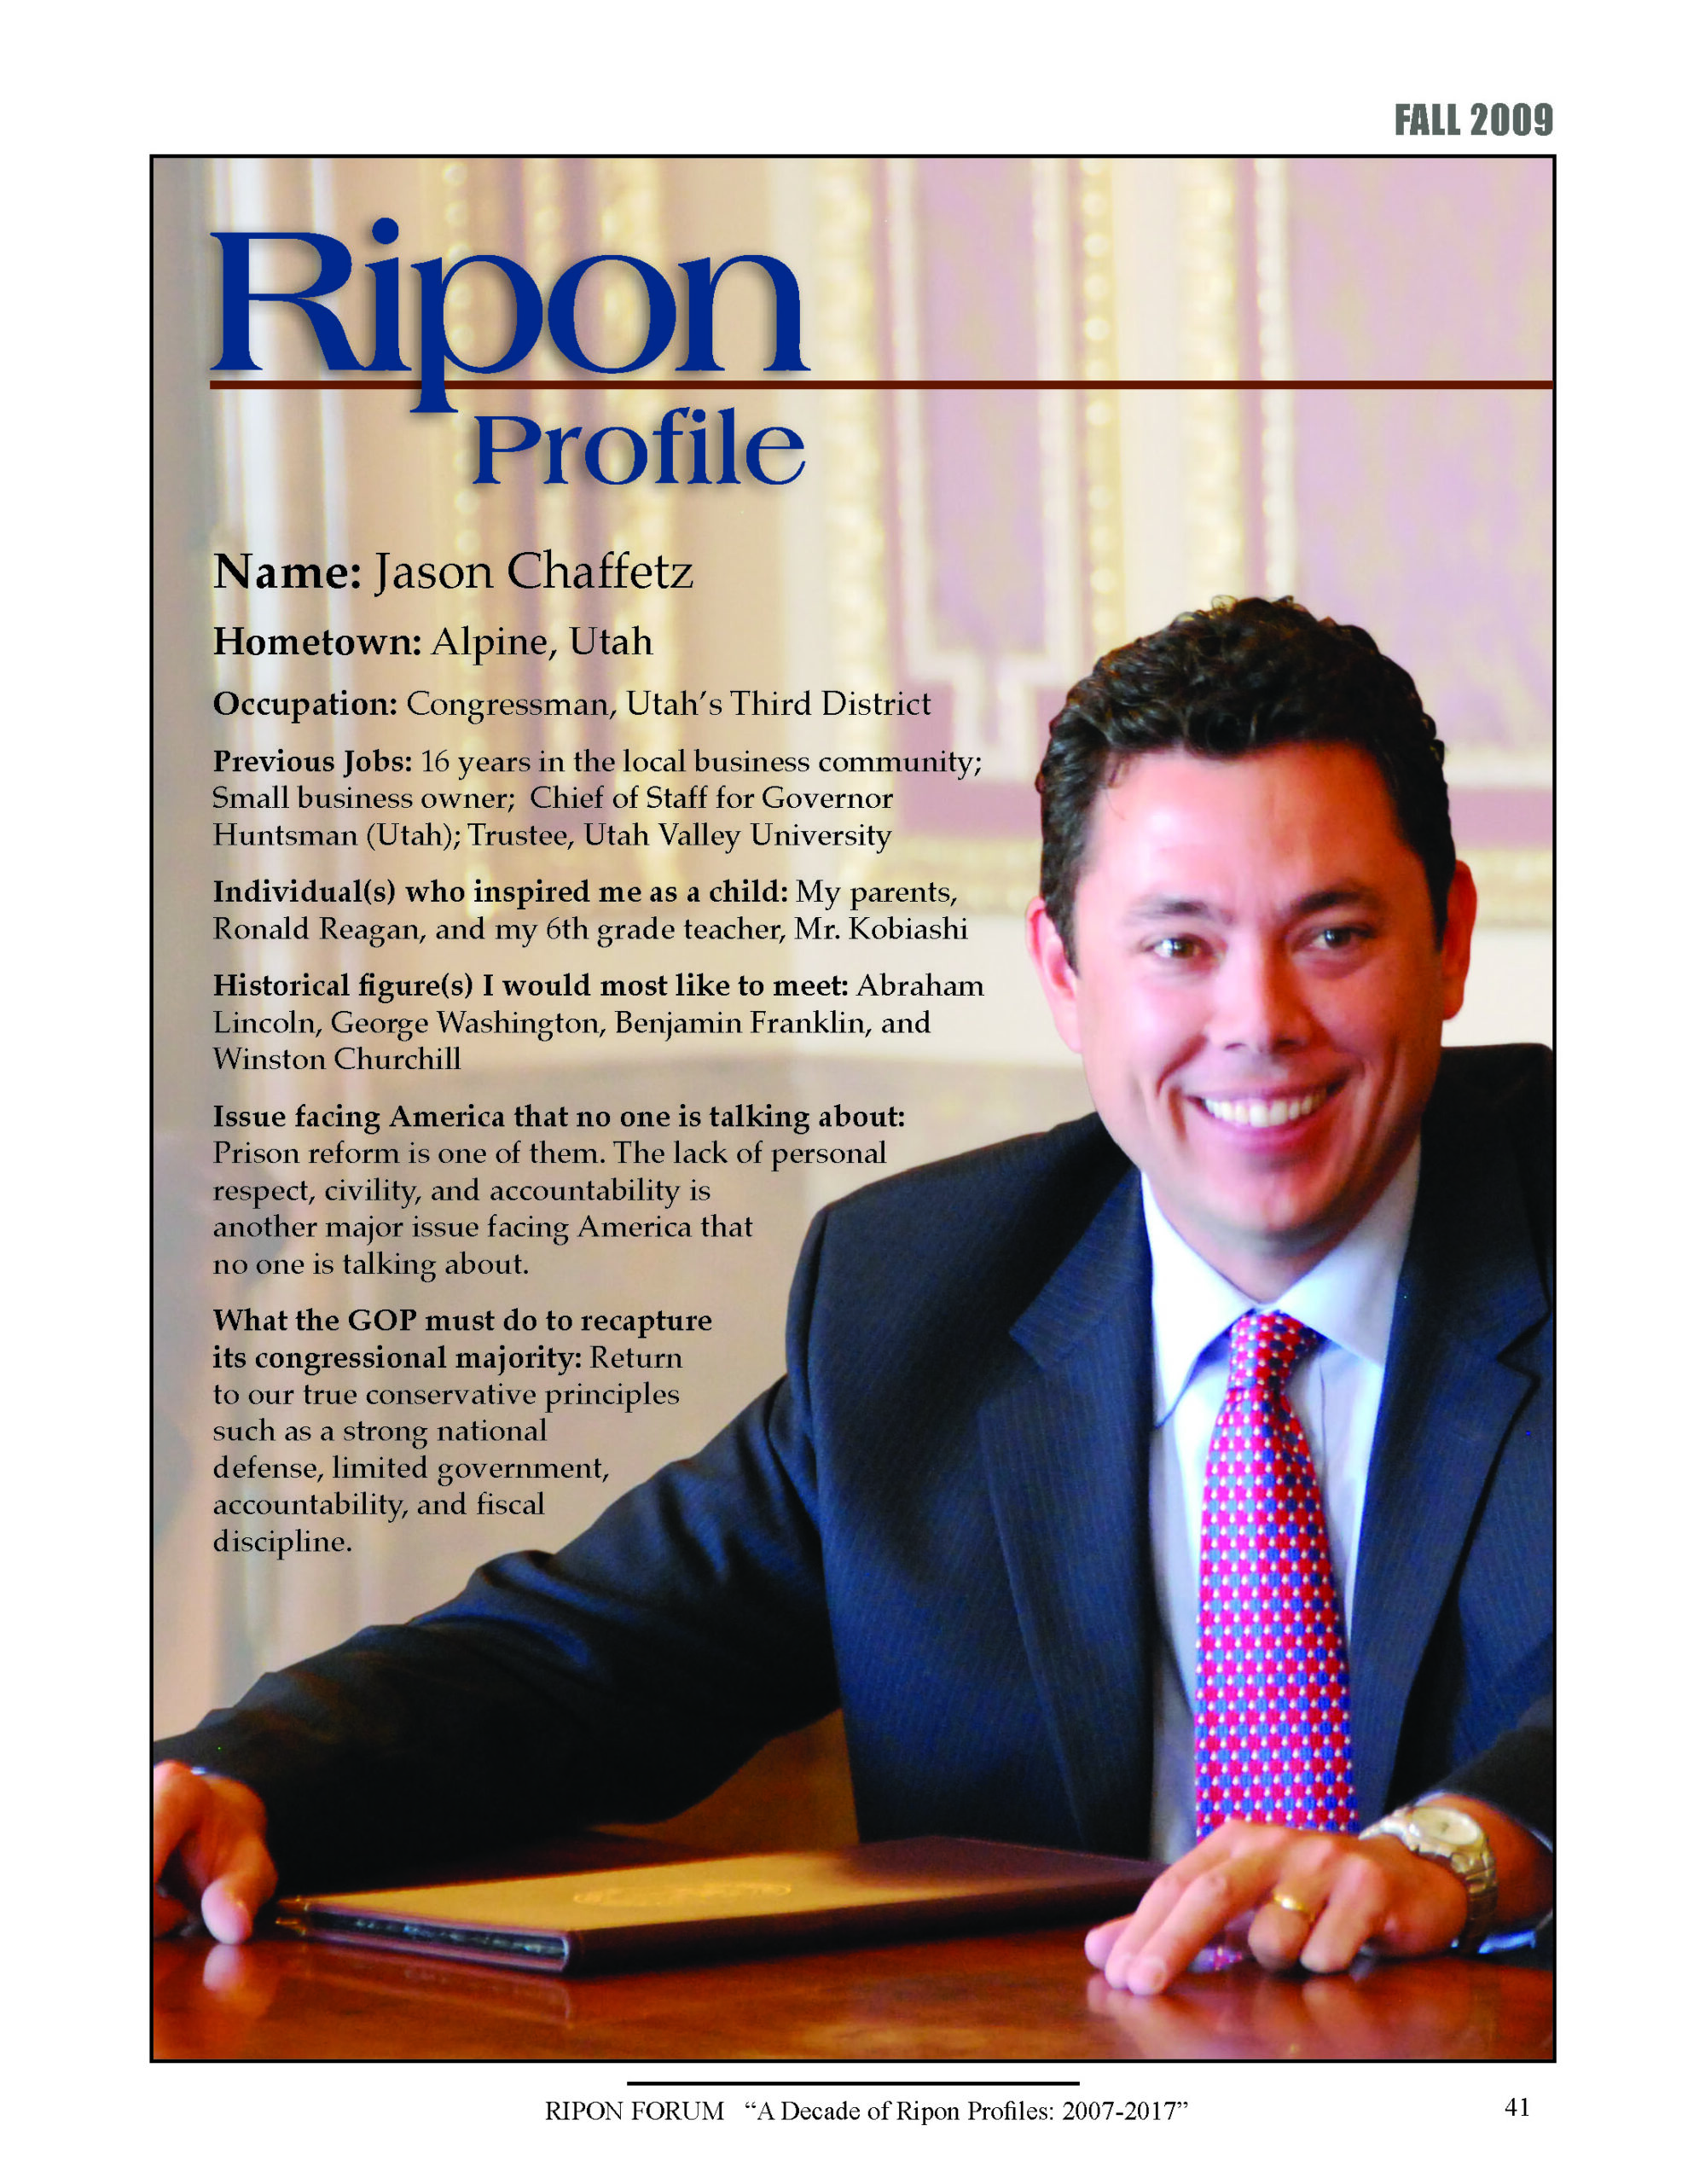 Ripon Profile of Jason Chaffetz